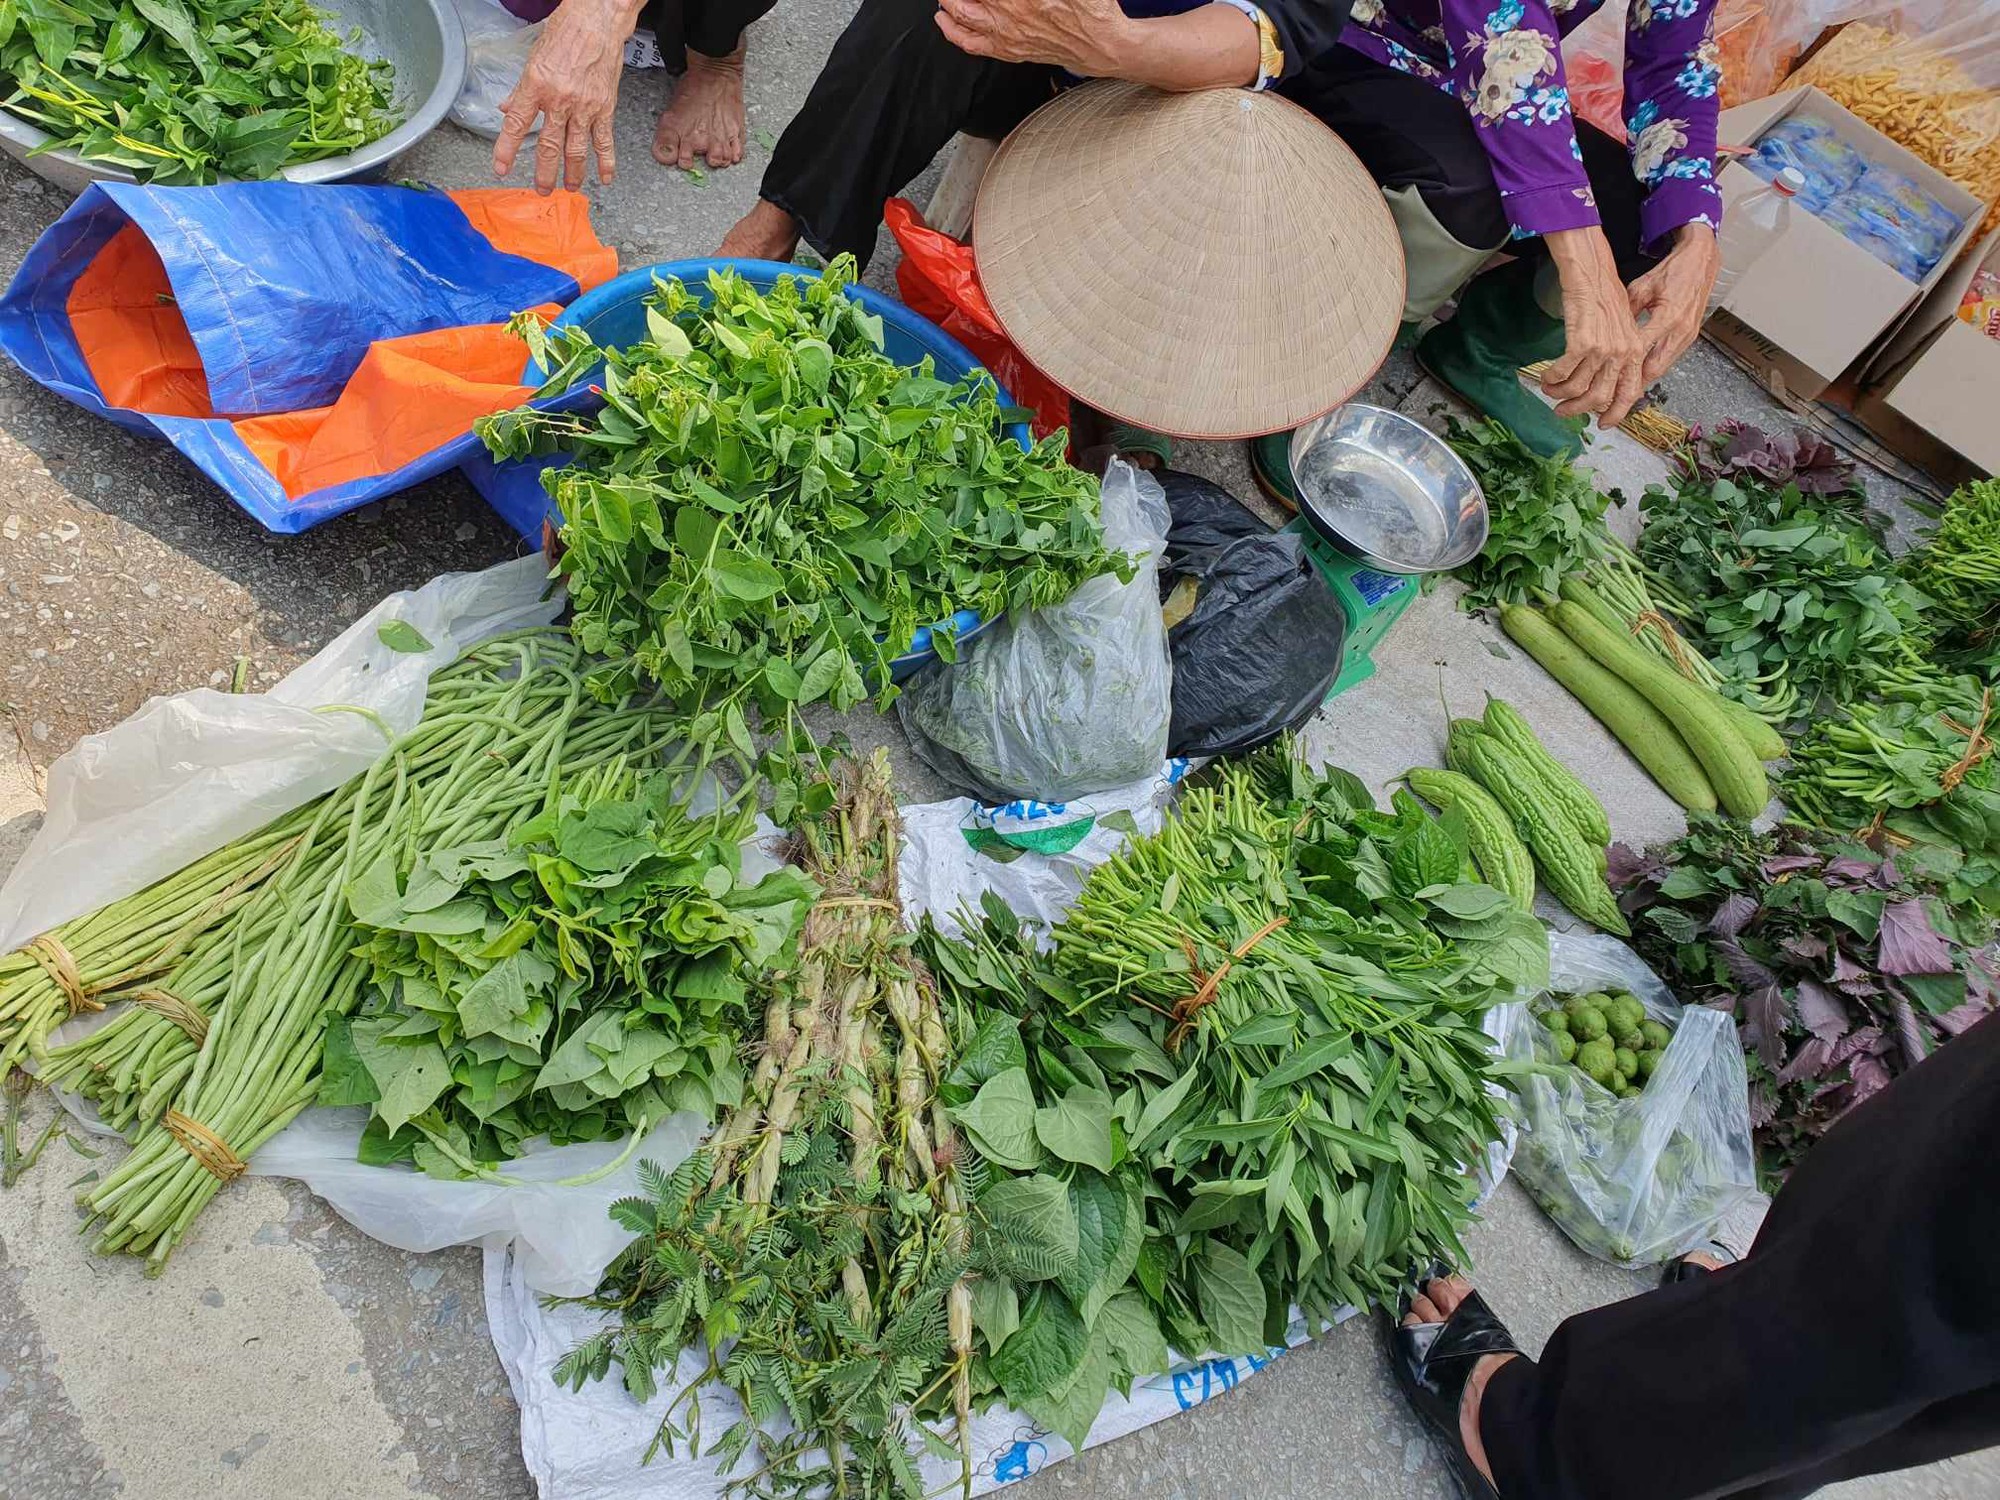 Mẹ 3 con kể chuyện chi tiêu ở ngoại thành Hà Nội: Nhiều thực phẩm giá cao không kém nội thành, biết cách mua và tự trồng rau, nuôi gà thì mới tiết kiệm!- Ảnh 3.